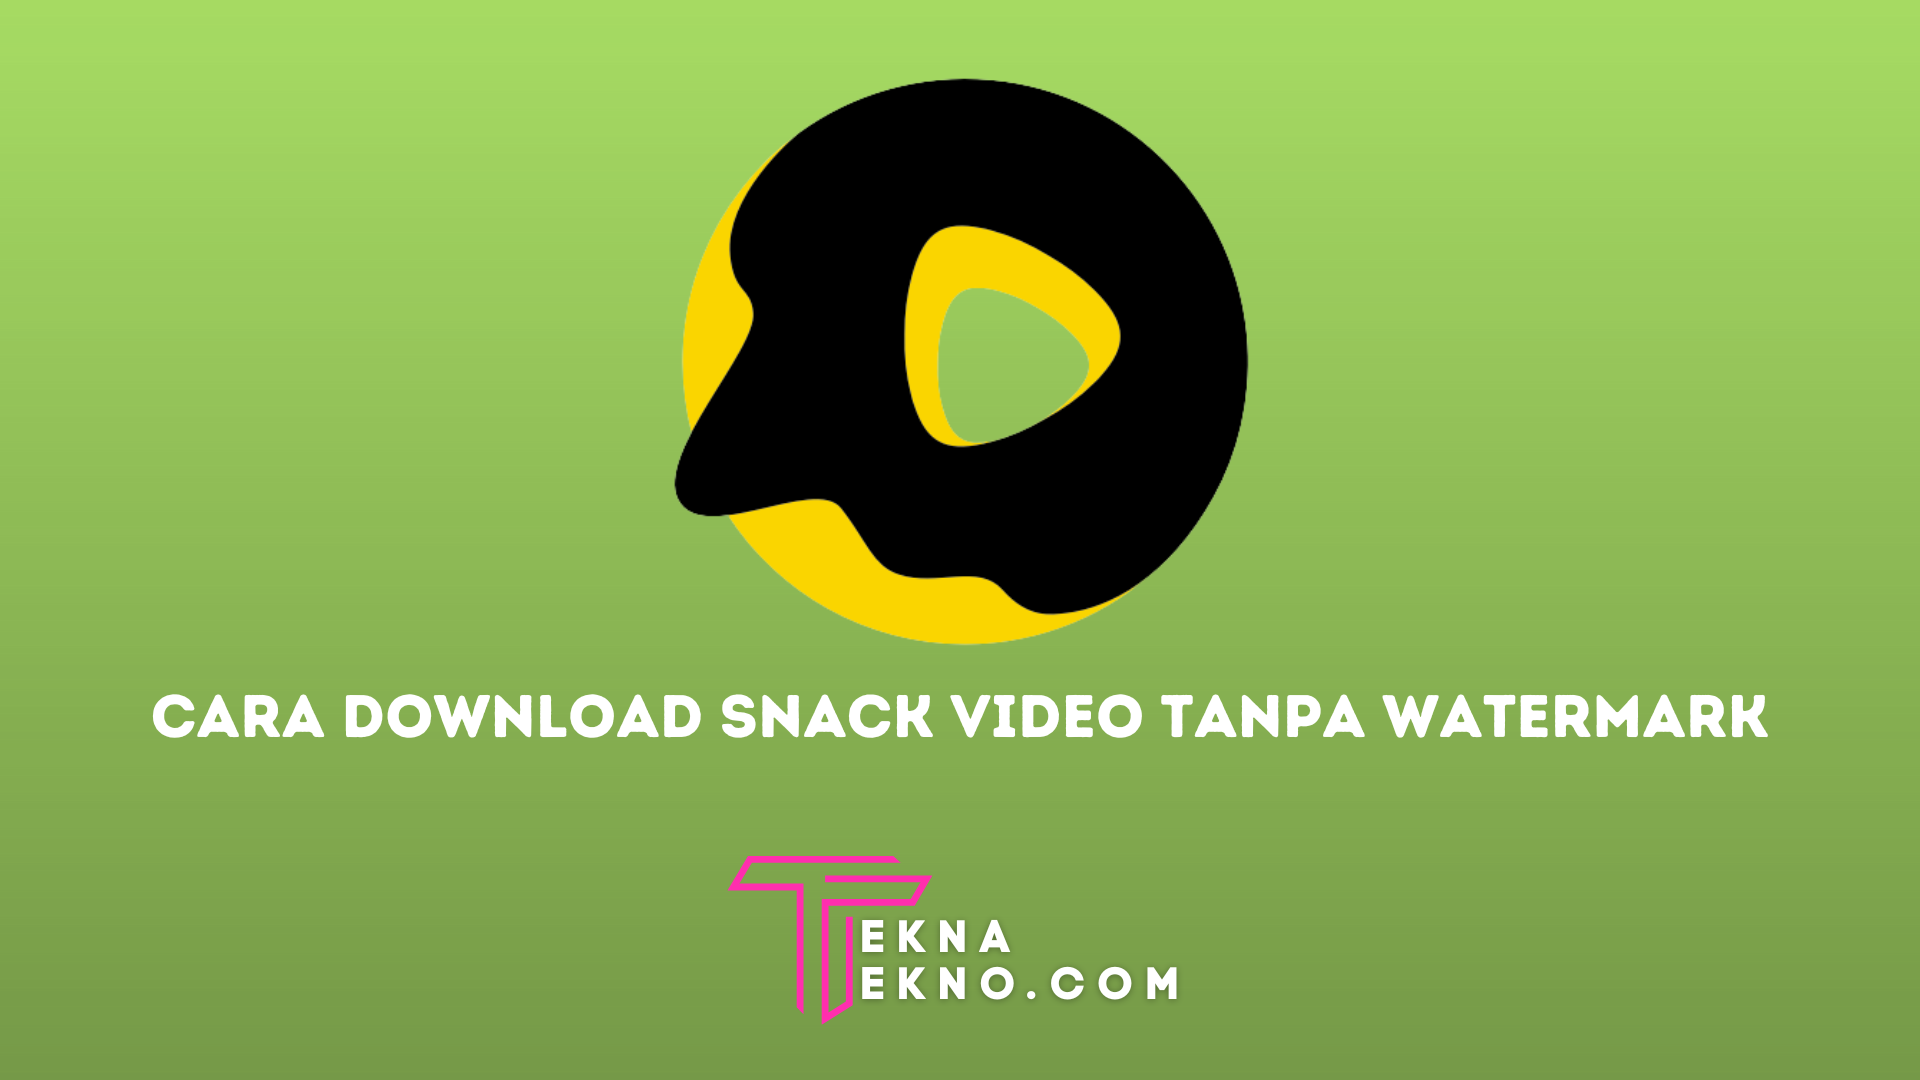 7 Cara Download Snack Video Tanpa Watermark dengan Mudah di HP Android dan iOS